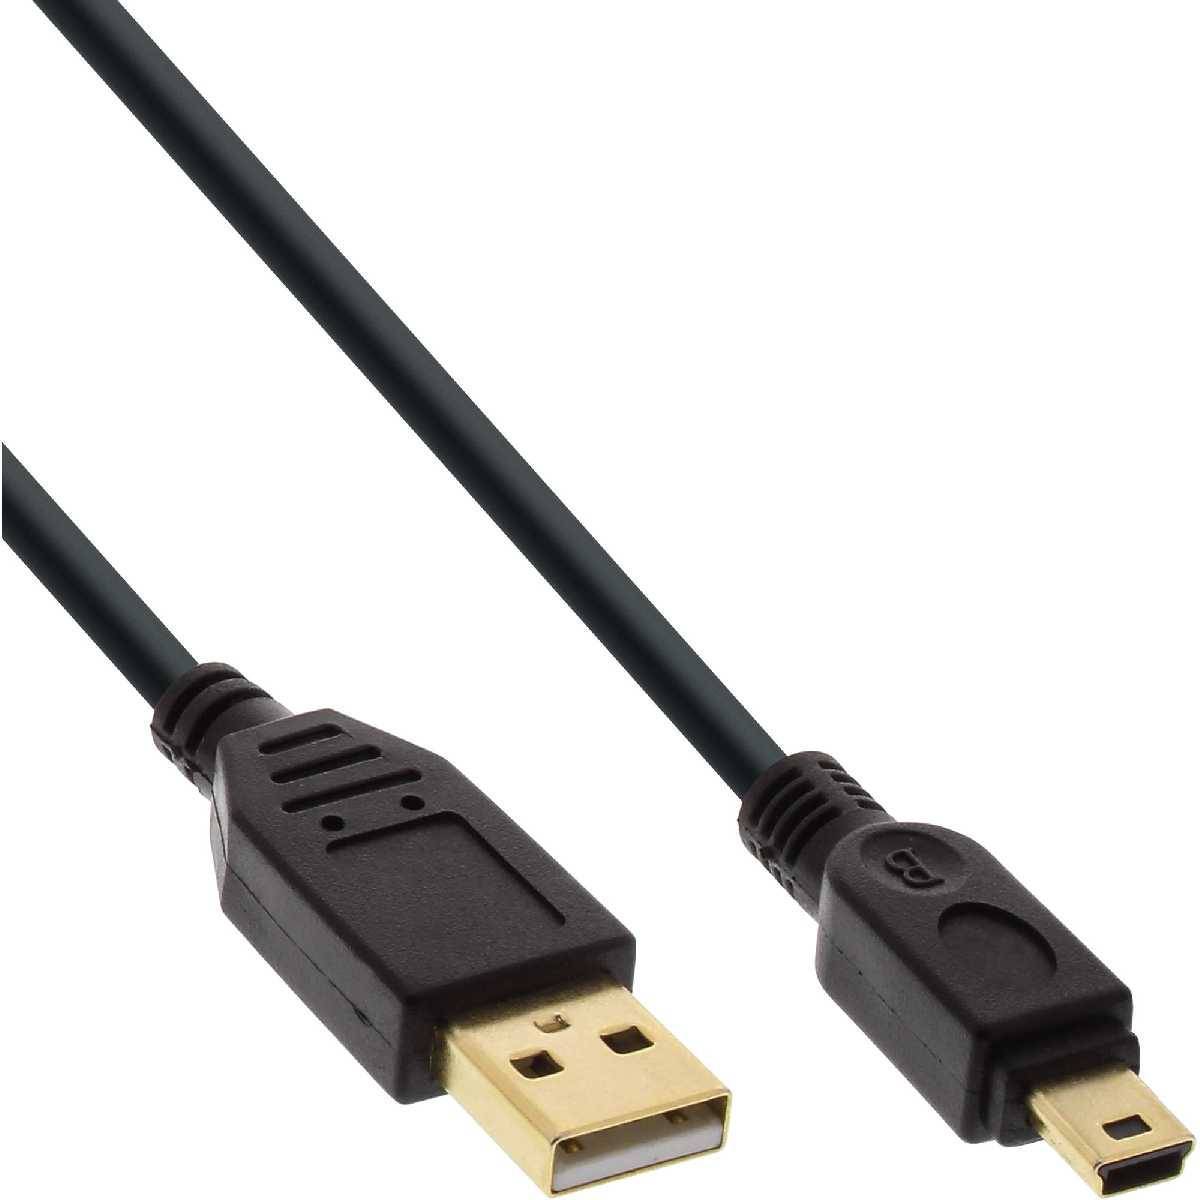 USB2 InLine USB 2.0 Mini-Kabel USB A Stecker an MiniB Stecker (5pol.) schwarz